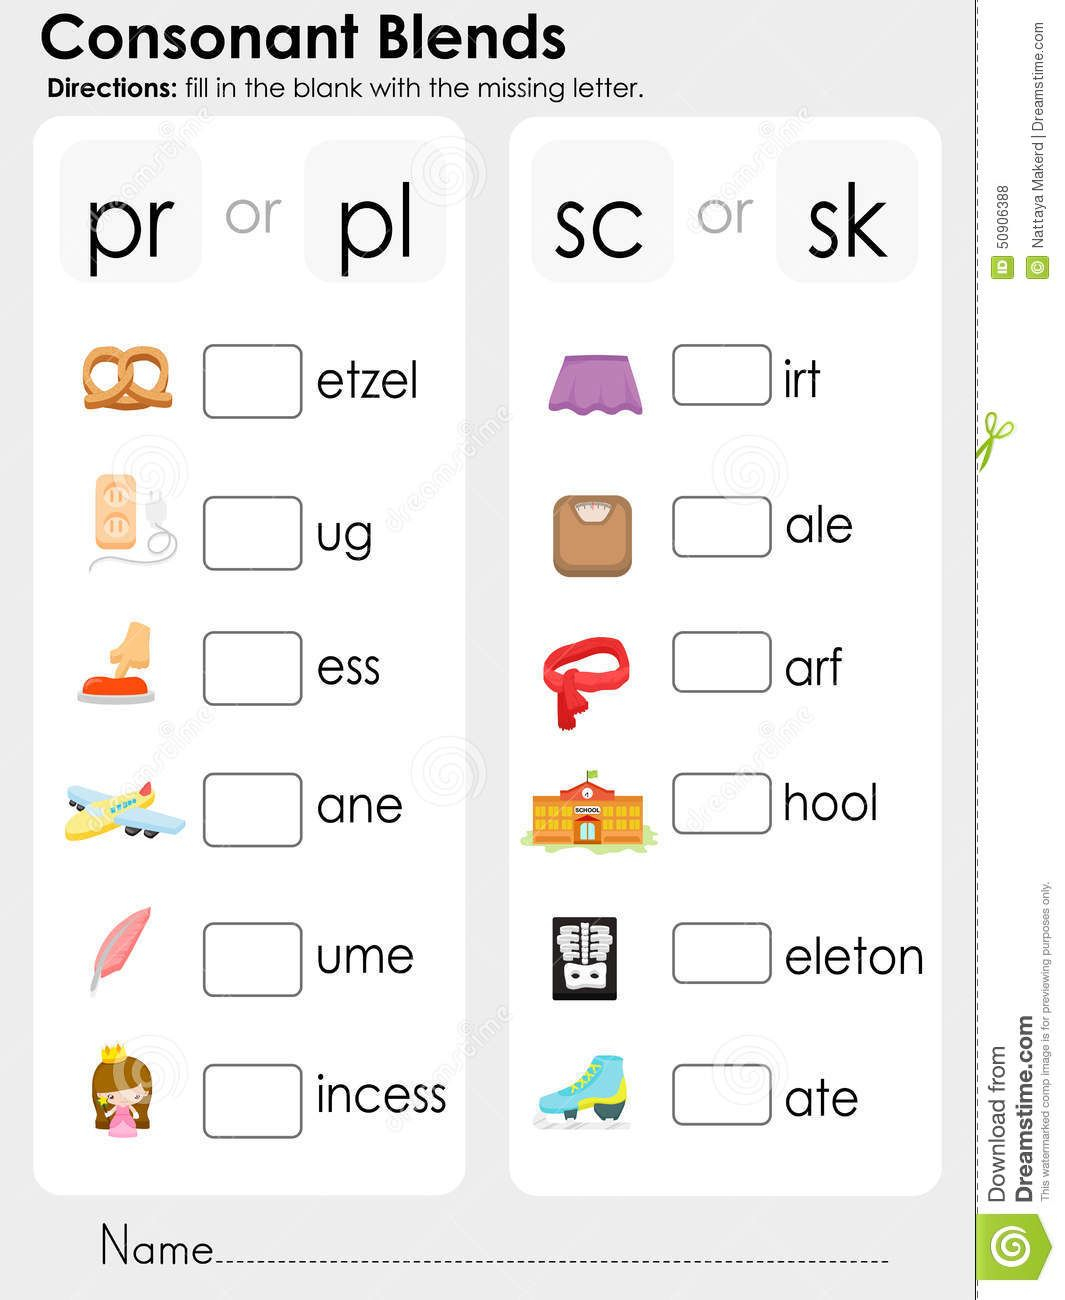 Consonant Blends : Missing Letter - Worksheet For Education throughout Letter Blends Worksheets